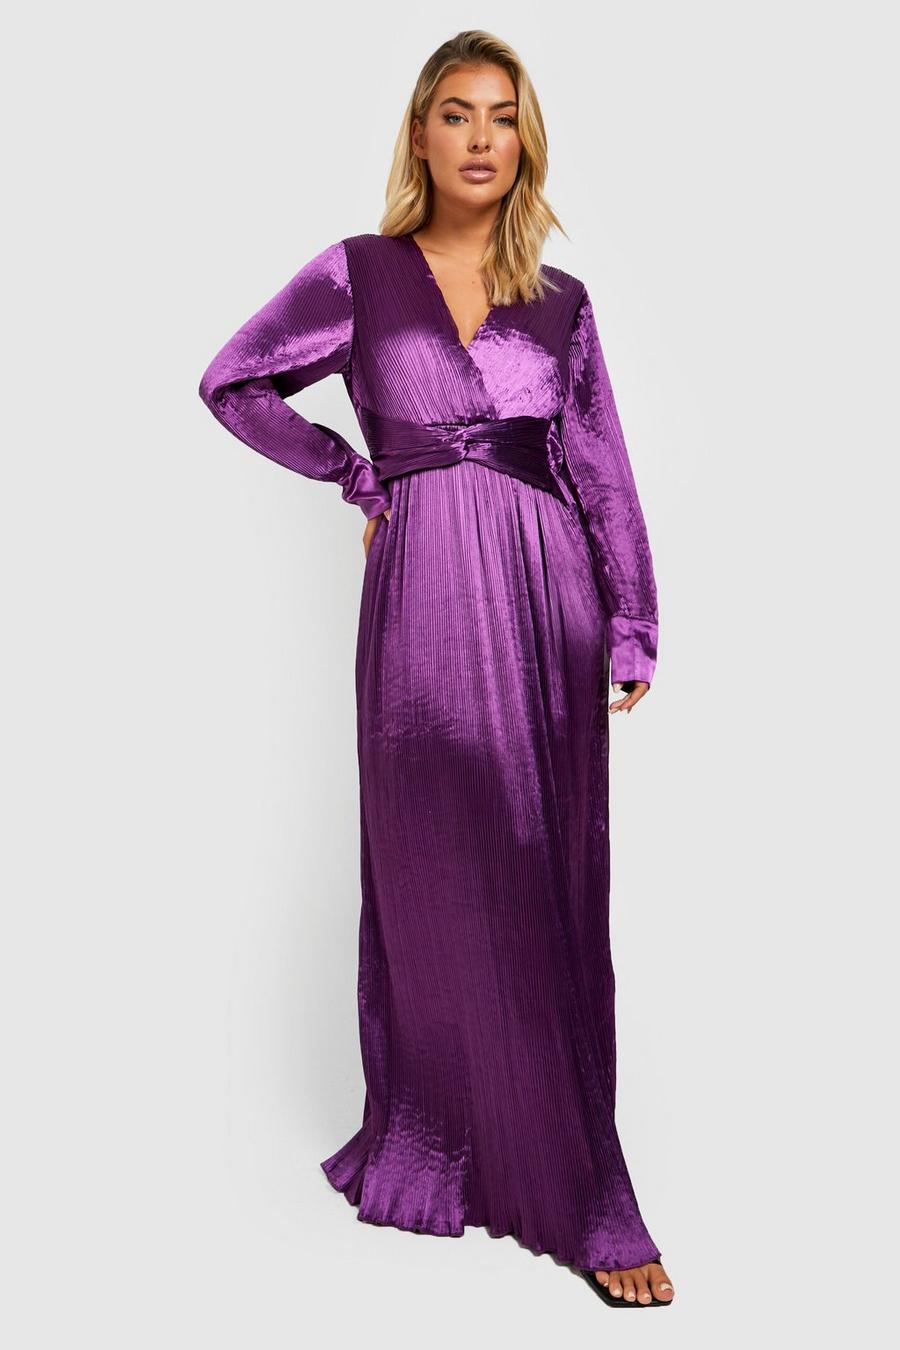 Jewel purple Premium Plisse Twist Detail Maxi Dress